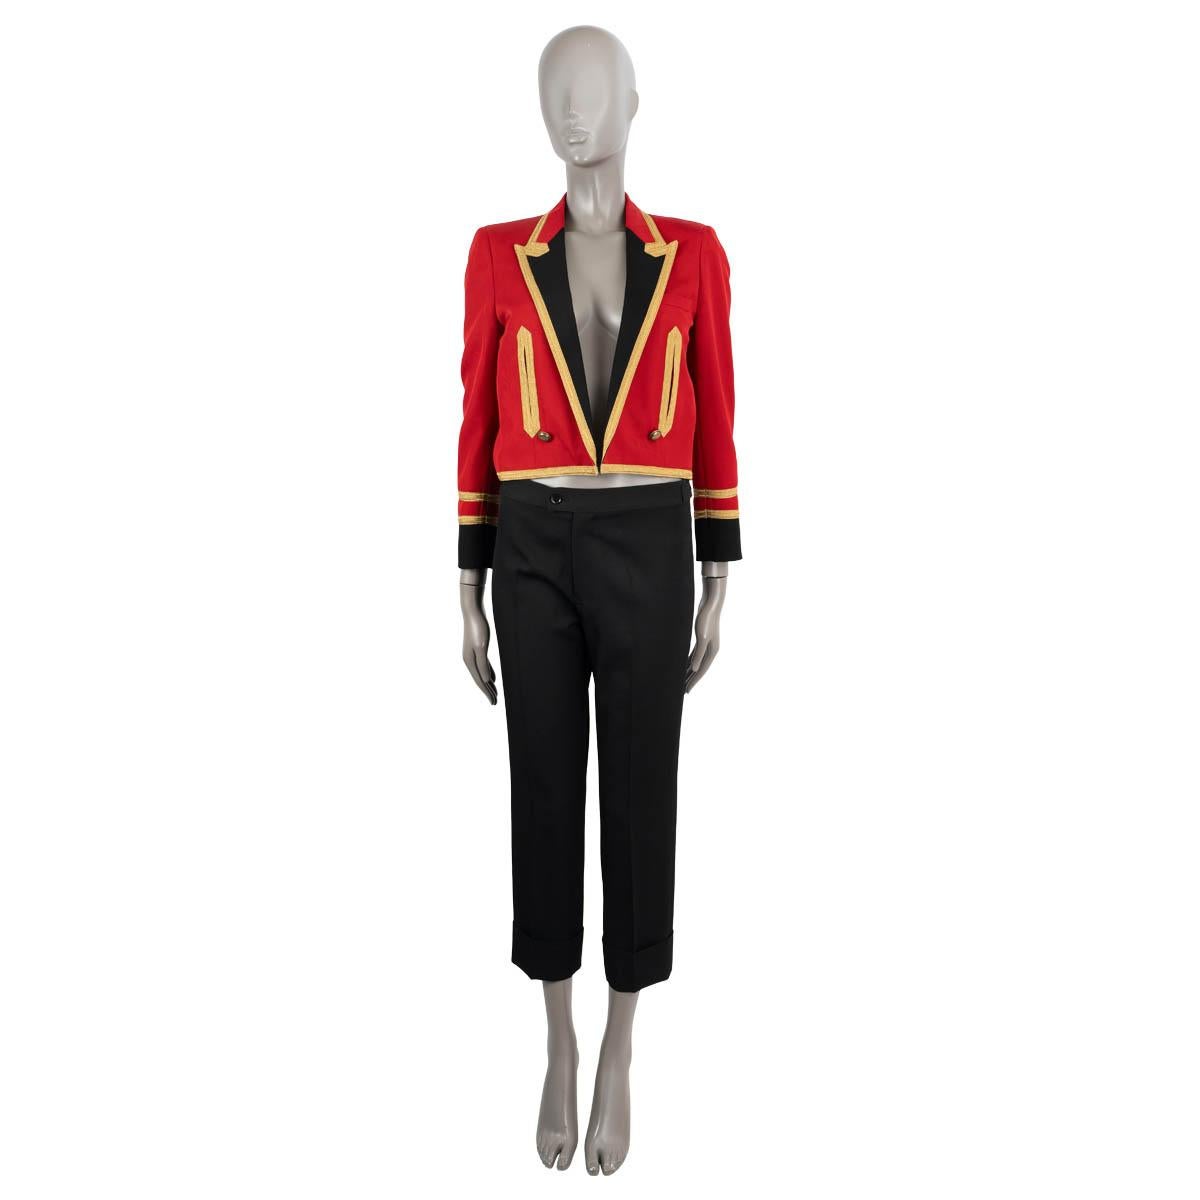 100% authentische Saint Laurent Spencer Jacke aus roter Wolle (100%). Diese Militärjacke hat eine verkürzte Silhouette, goldene Metallic-Besätze, kontrastierende schwarze Aufschläge und Manschetten sowie zwei Schlitztaschen auf der Vorderseite.